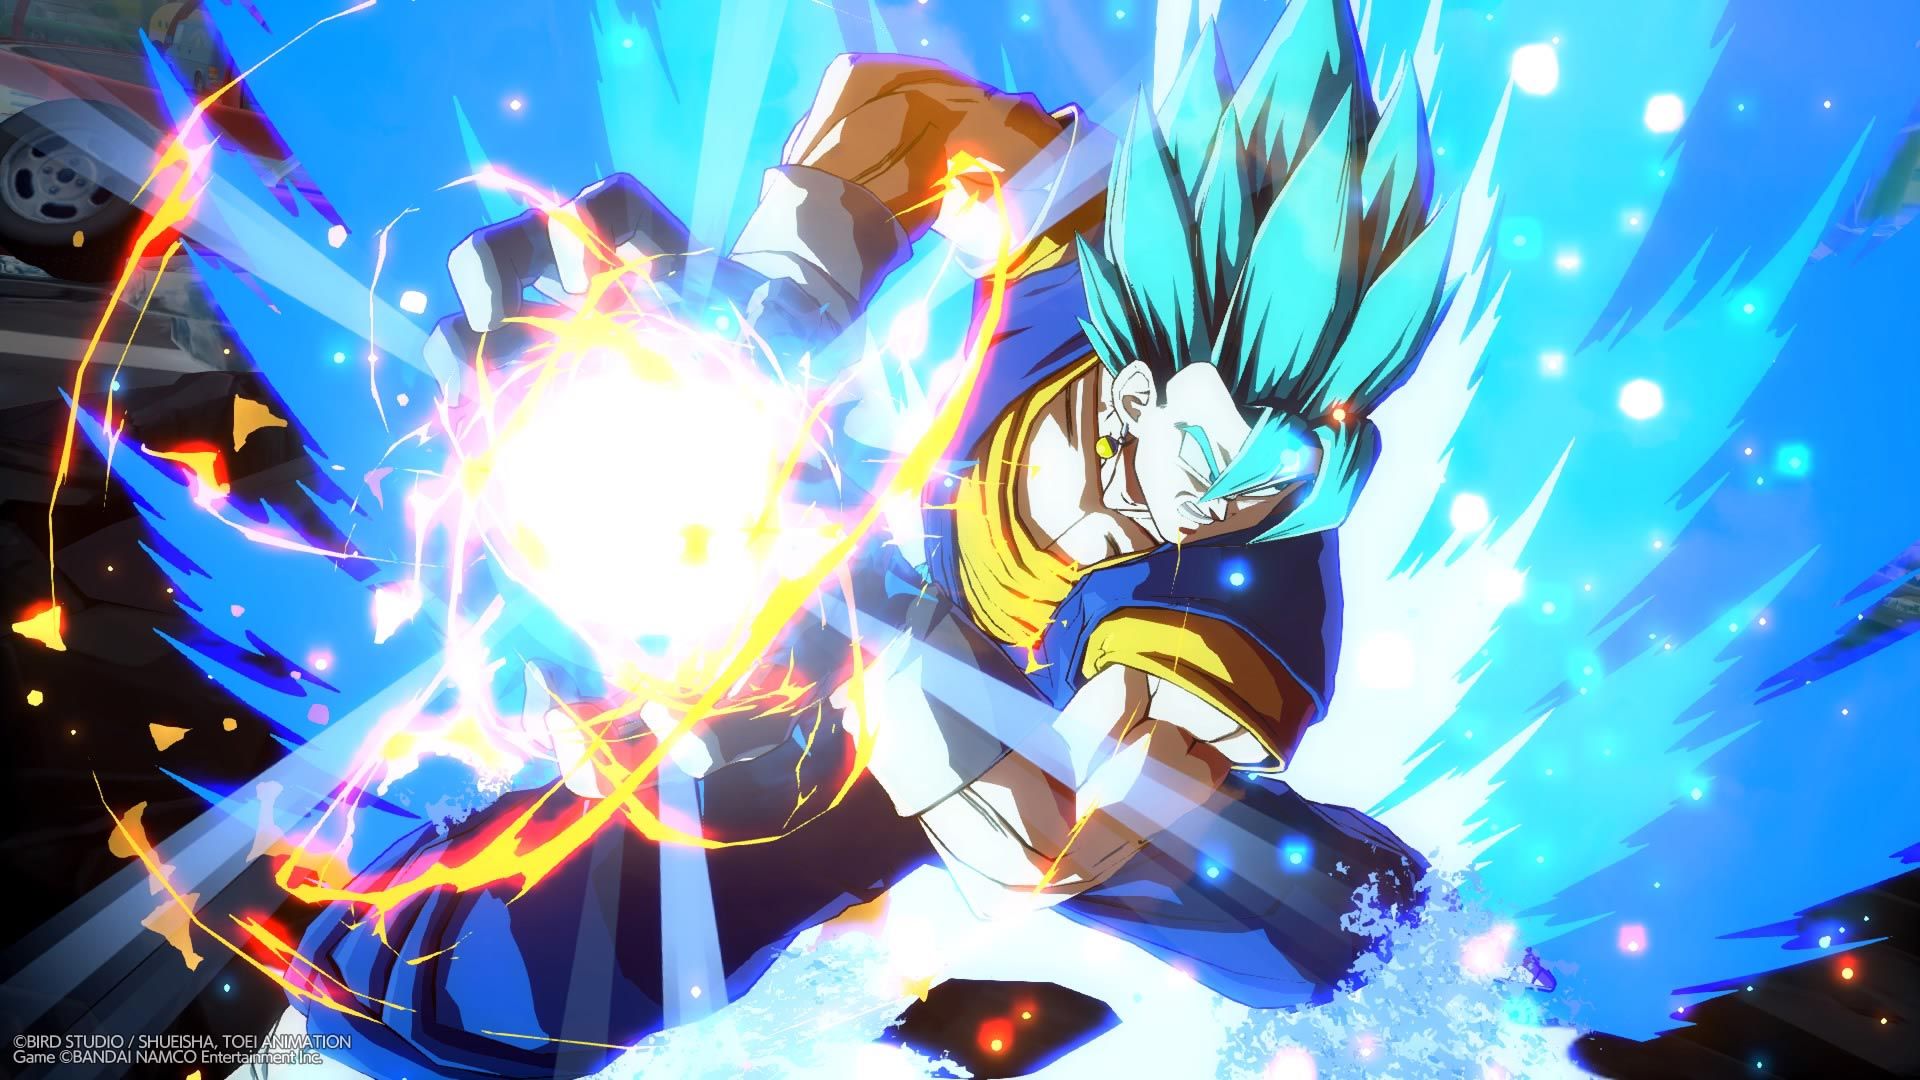 Super Saiyan God Super Saiyan Vegito and Fused Zamasu Dragon Ball FighterZ screenshots 1